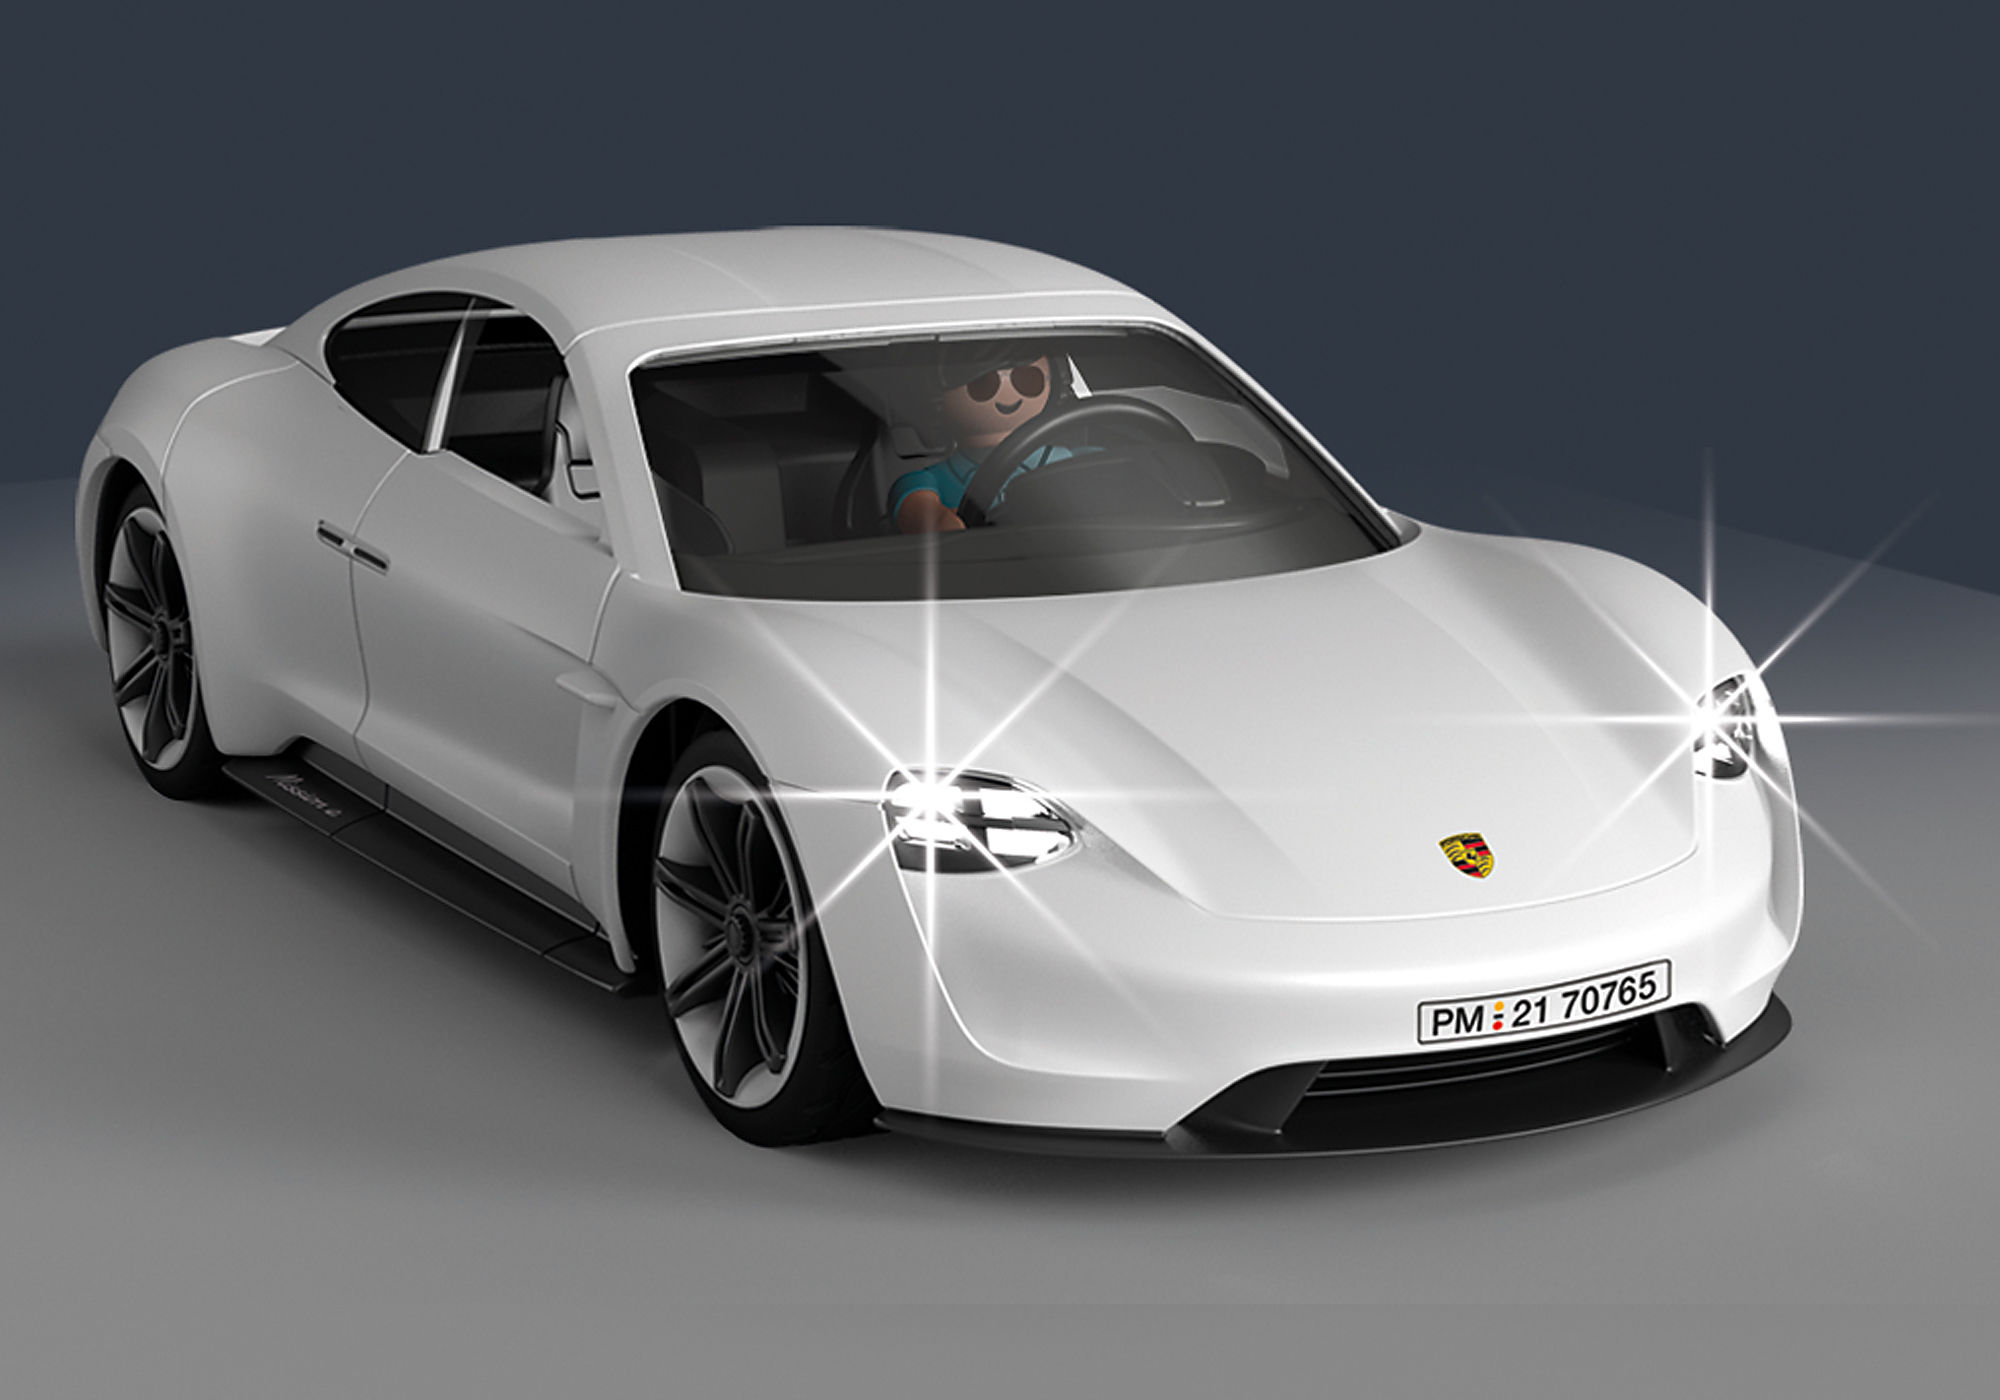 VIDEO: Designing A New Icon The Porsche Mission E